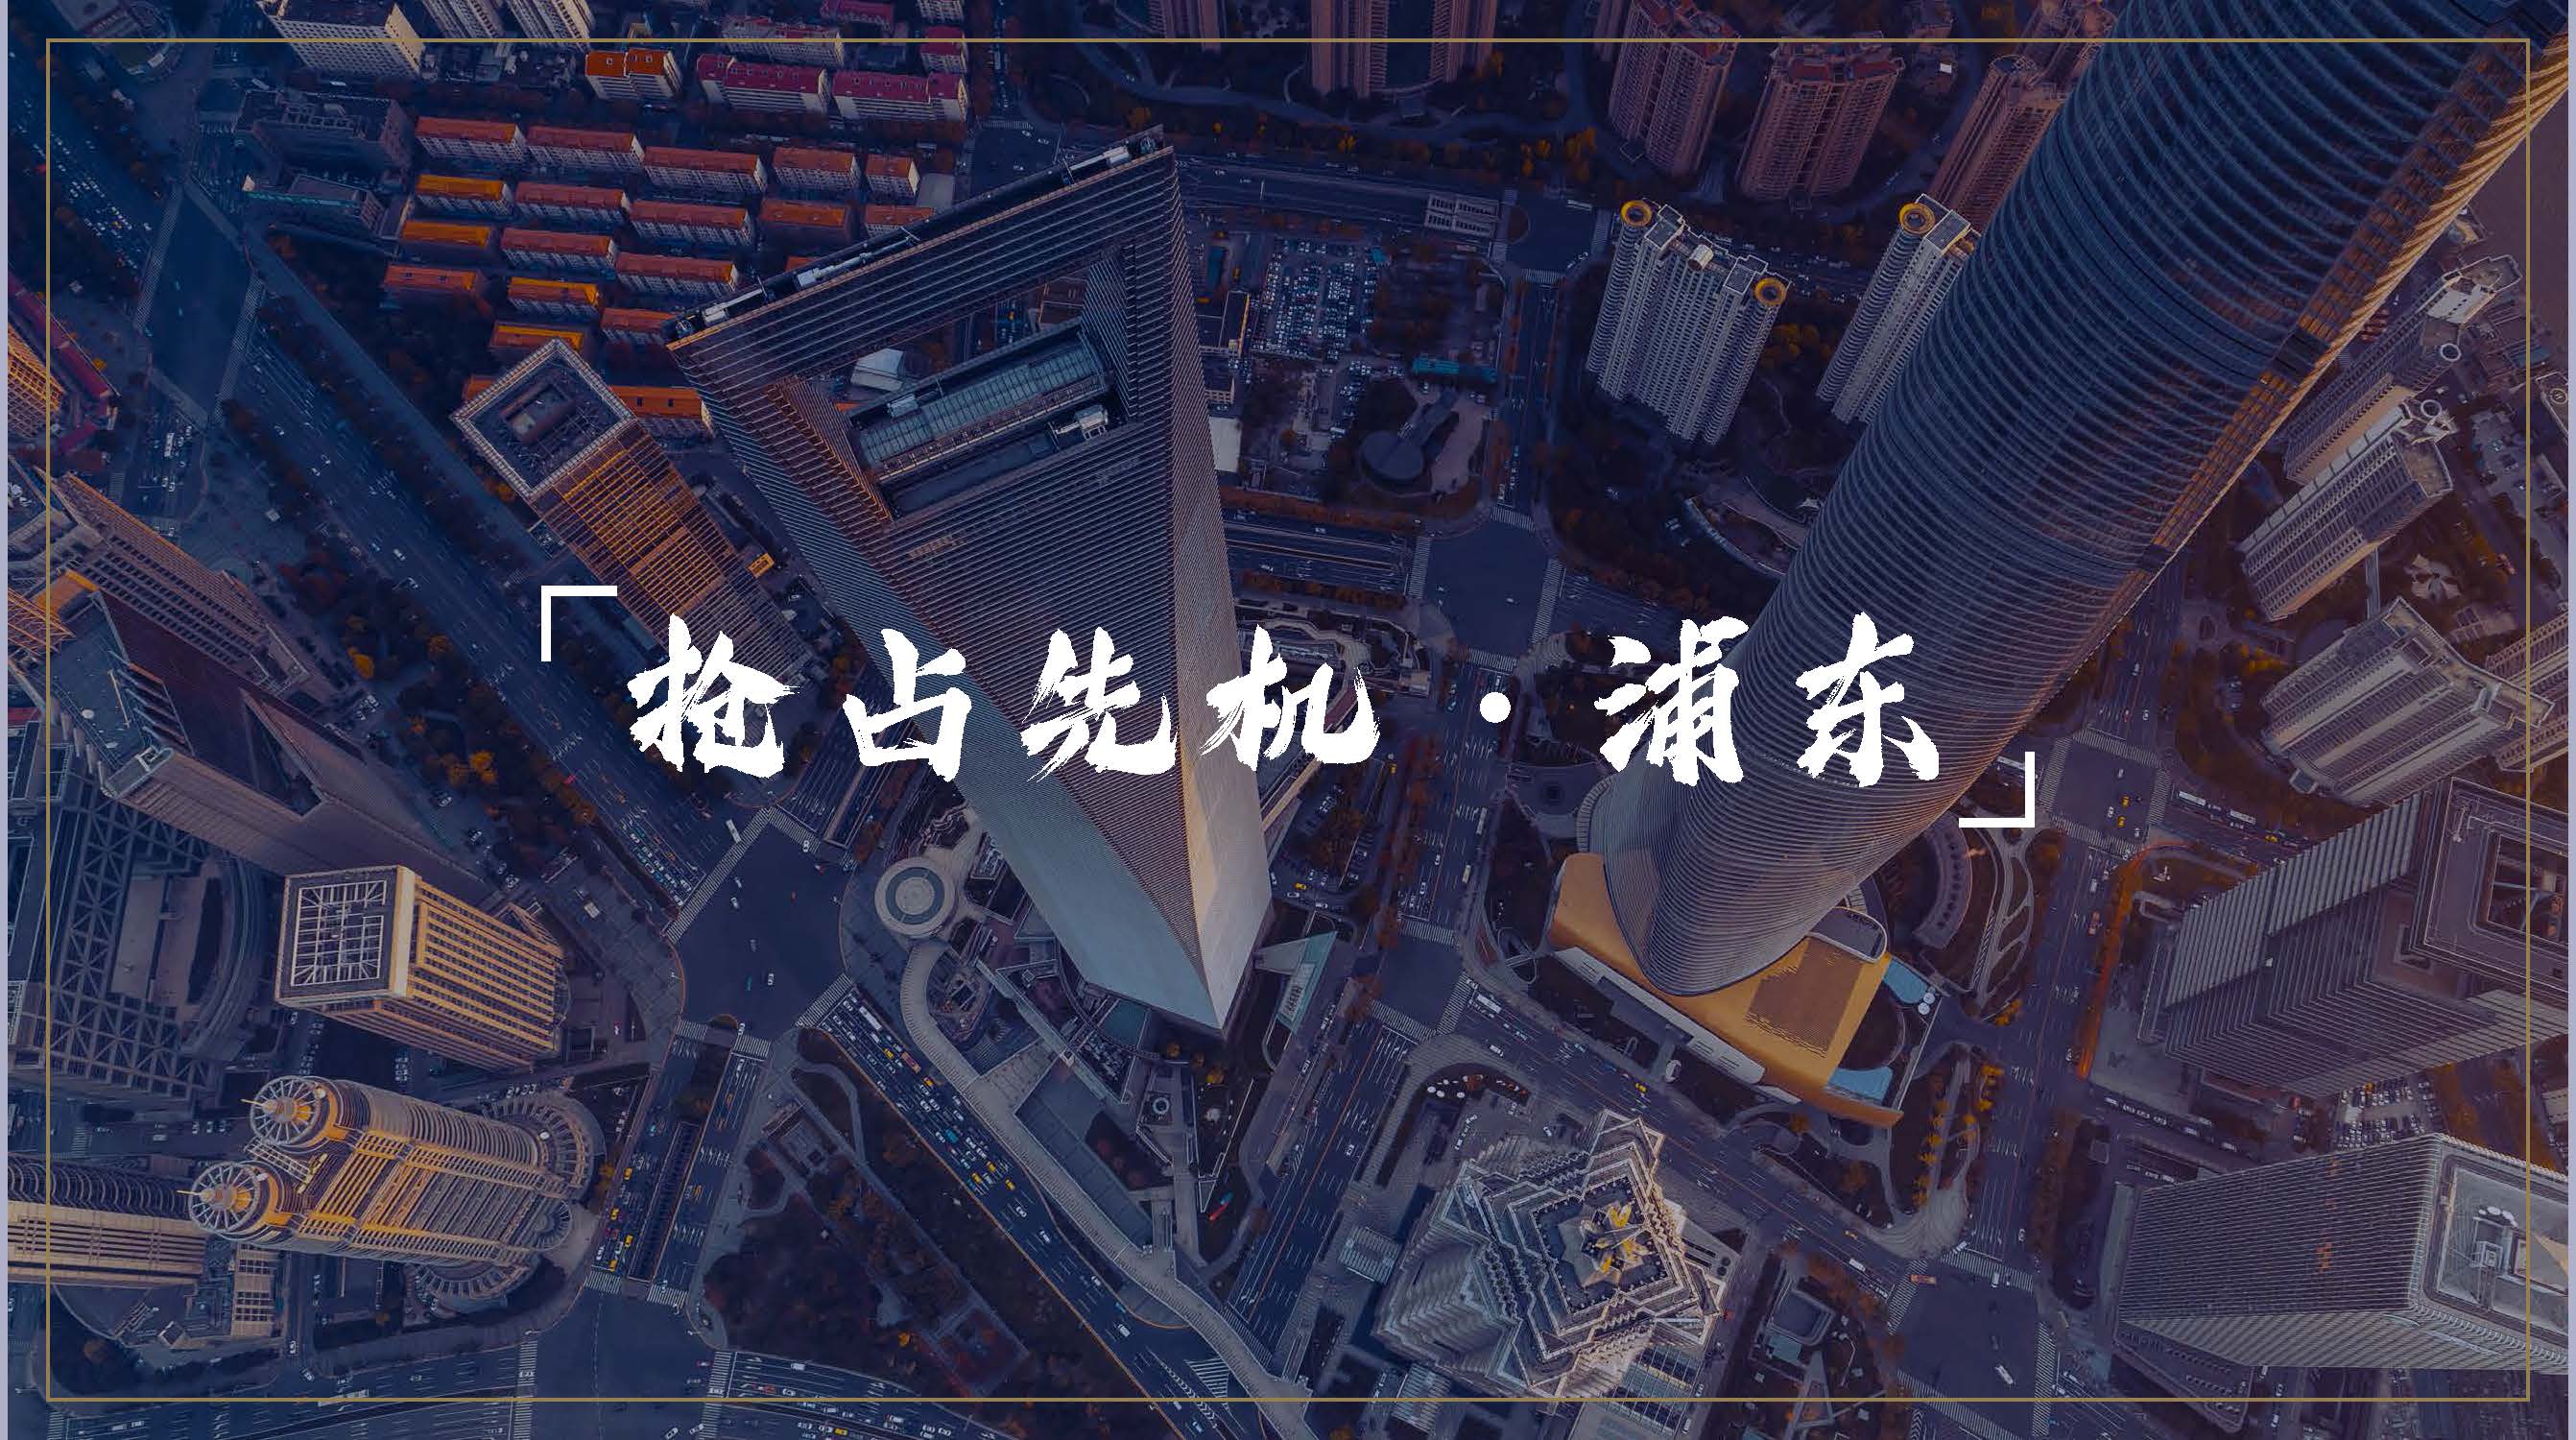 上海新环广场价值分析以及内部折扣曝光